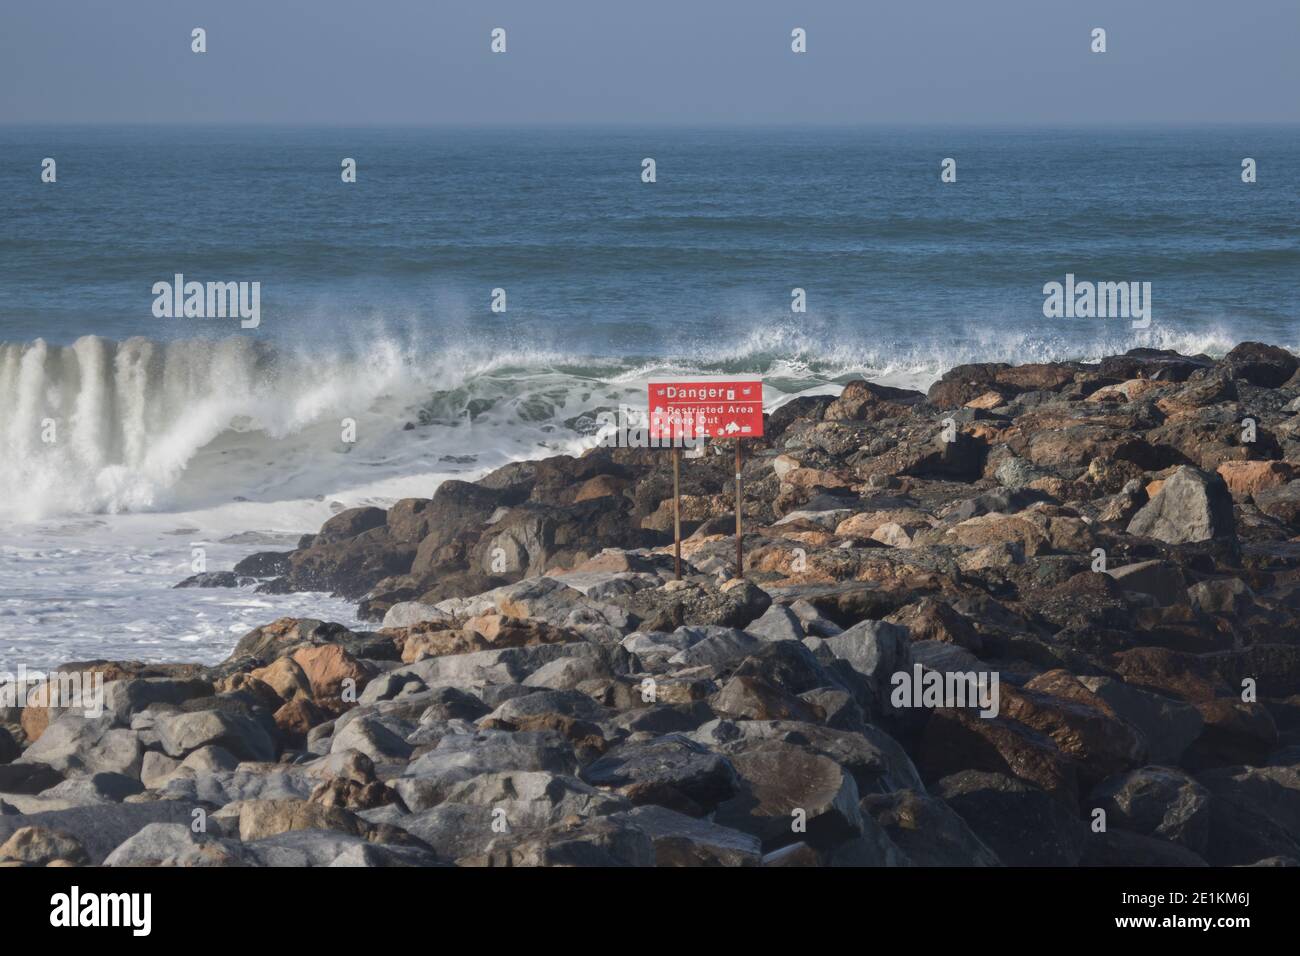 Pericolo area riservata tenere fuori un cartello di segnalazione con onde che si infrangono in background al molo sud in Ventura, CALIFORNIA, STATI UNITI D'AMERICA Foto Stock